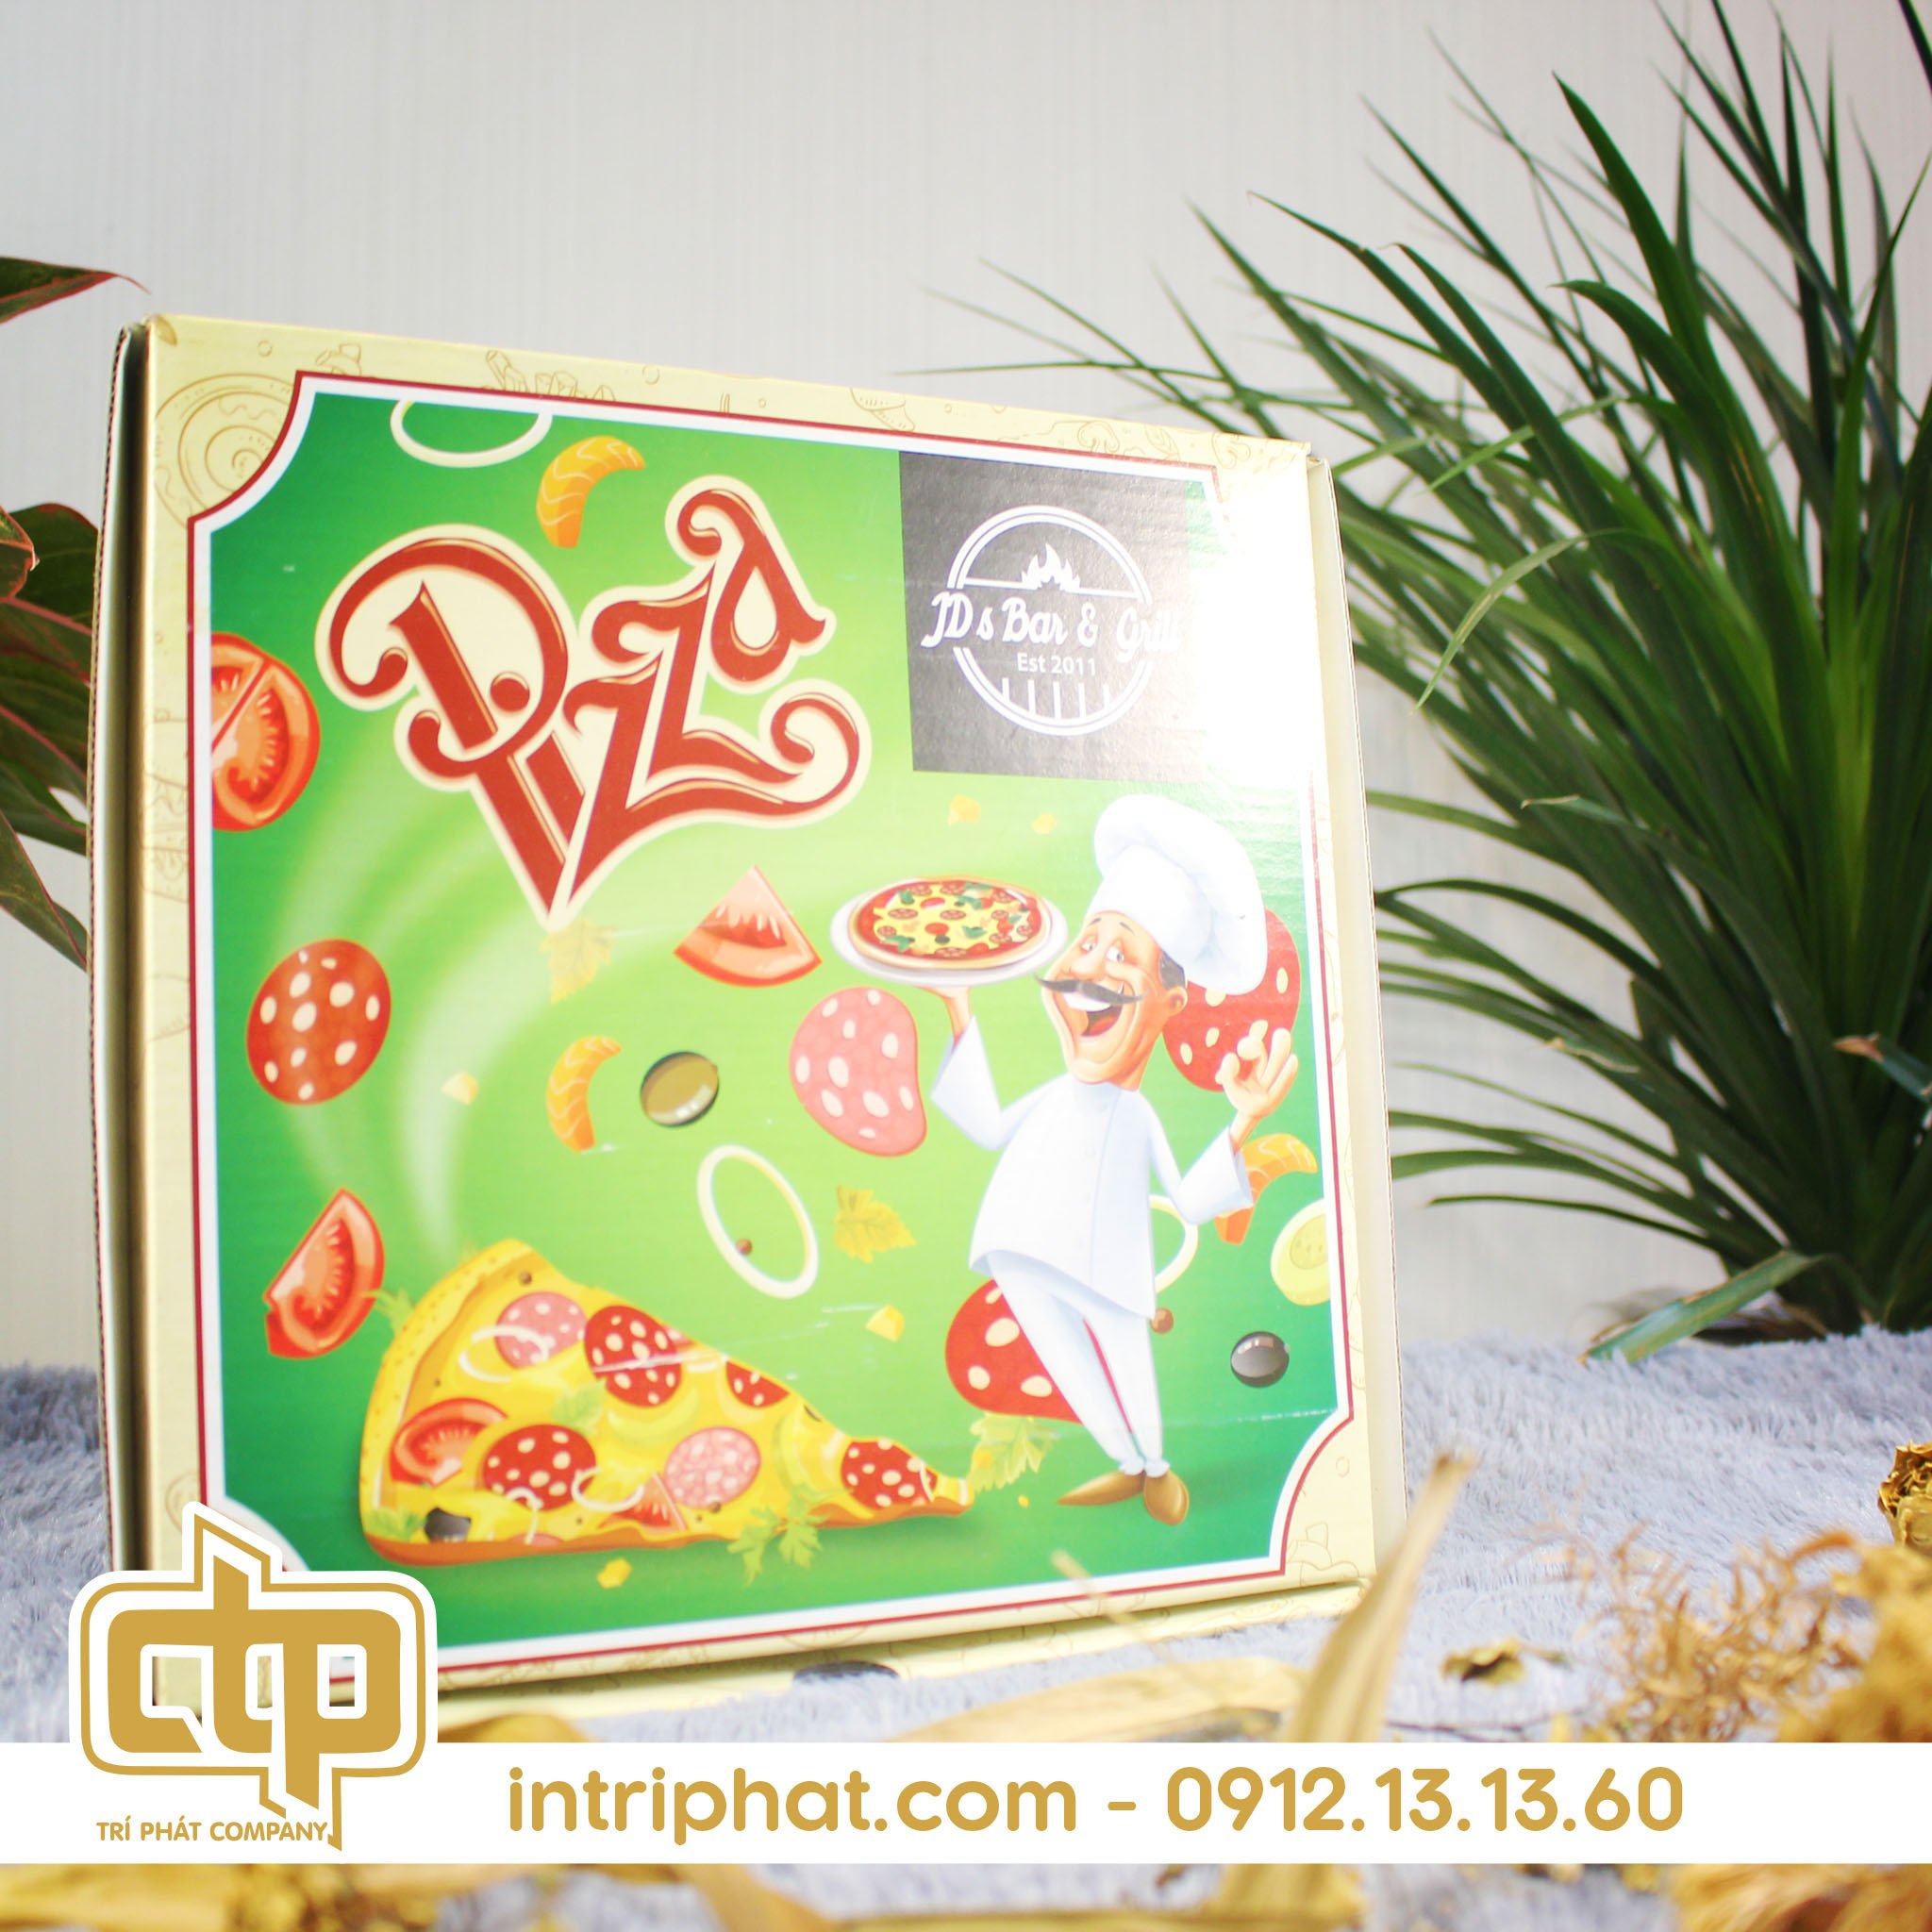 Các yếu tố ảnh hưởng đến chất lượng của hộp đựng bánh pizza